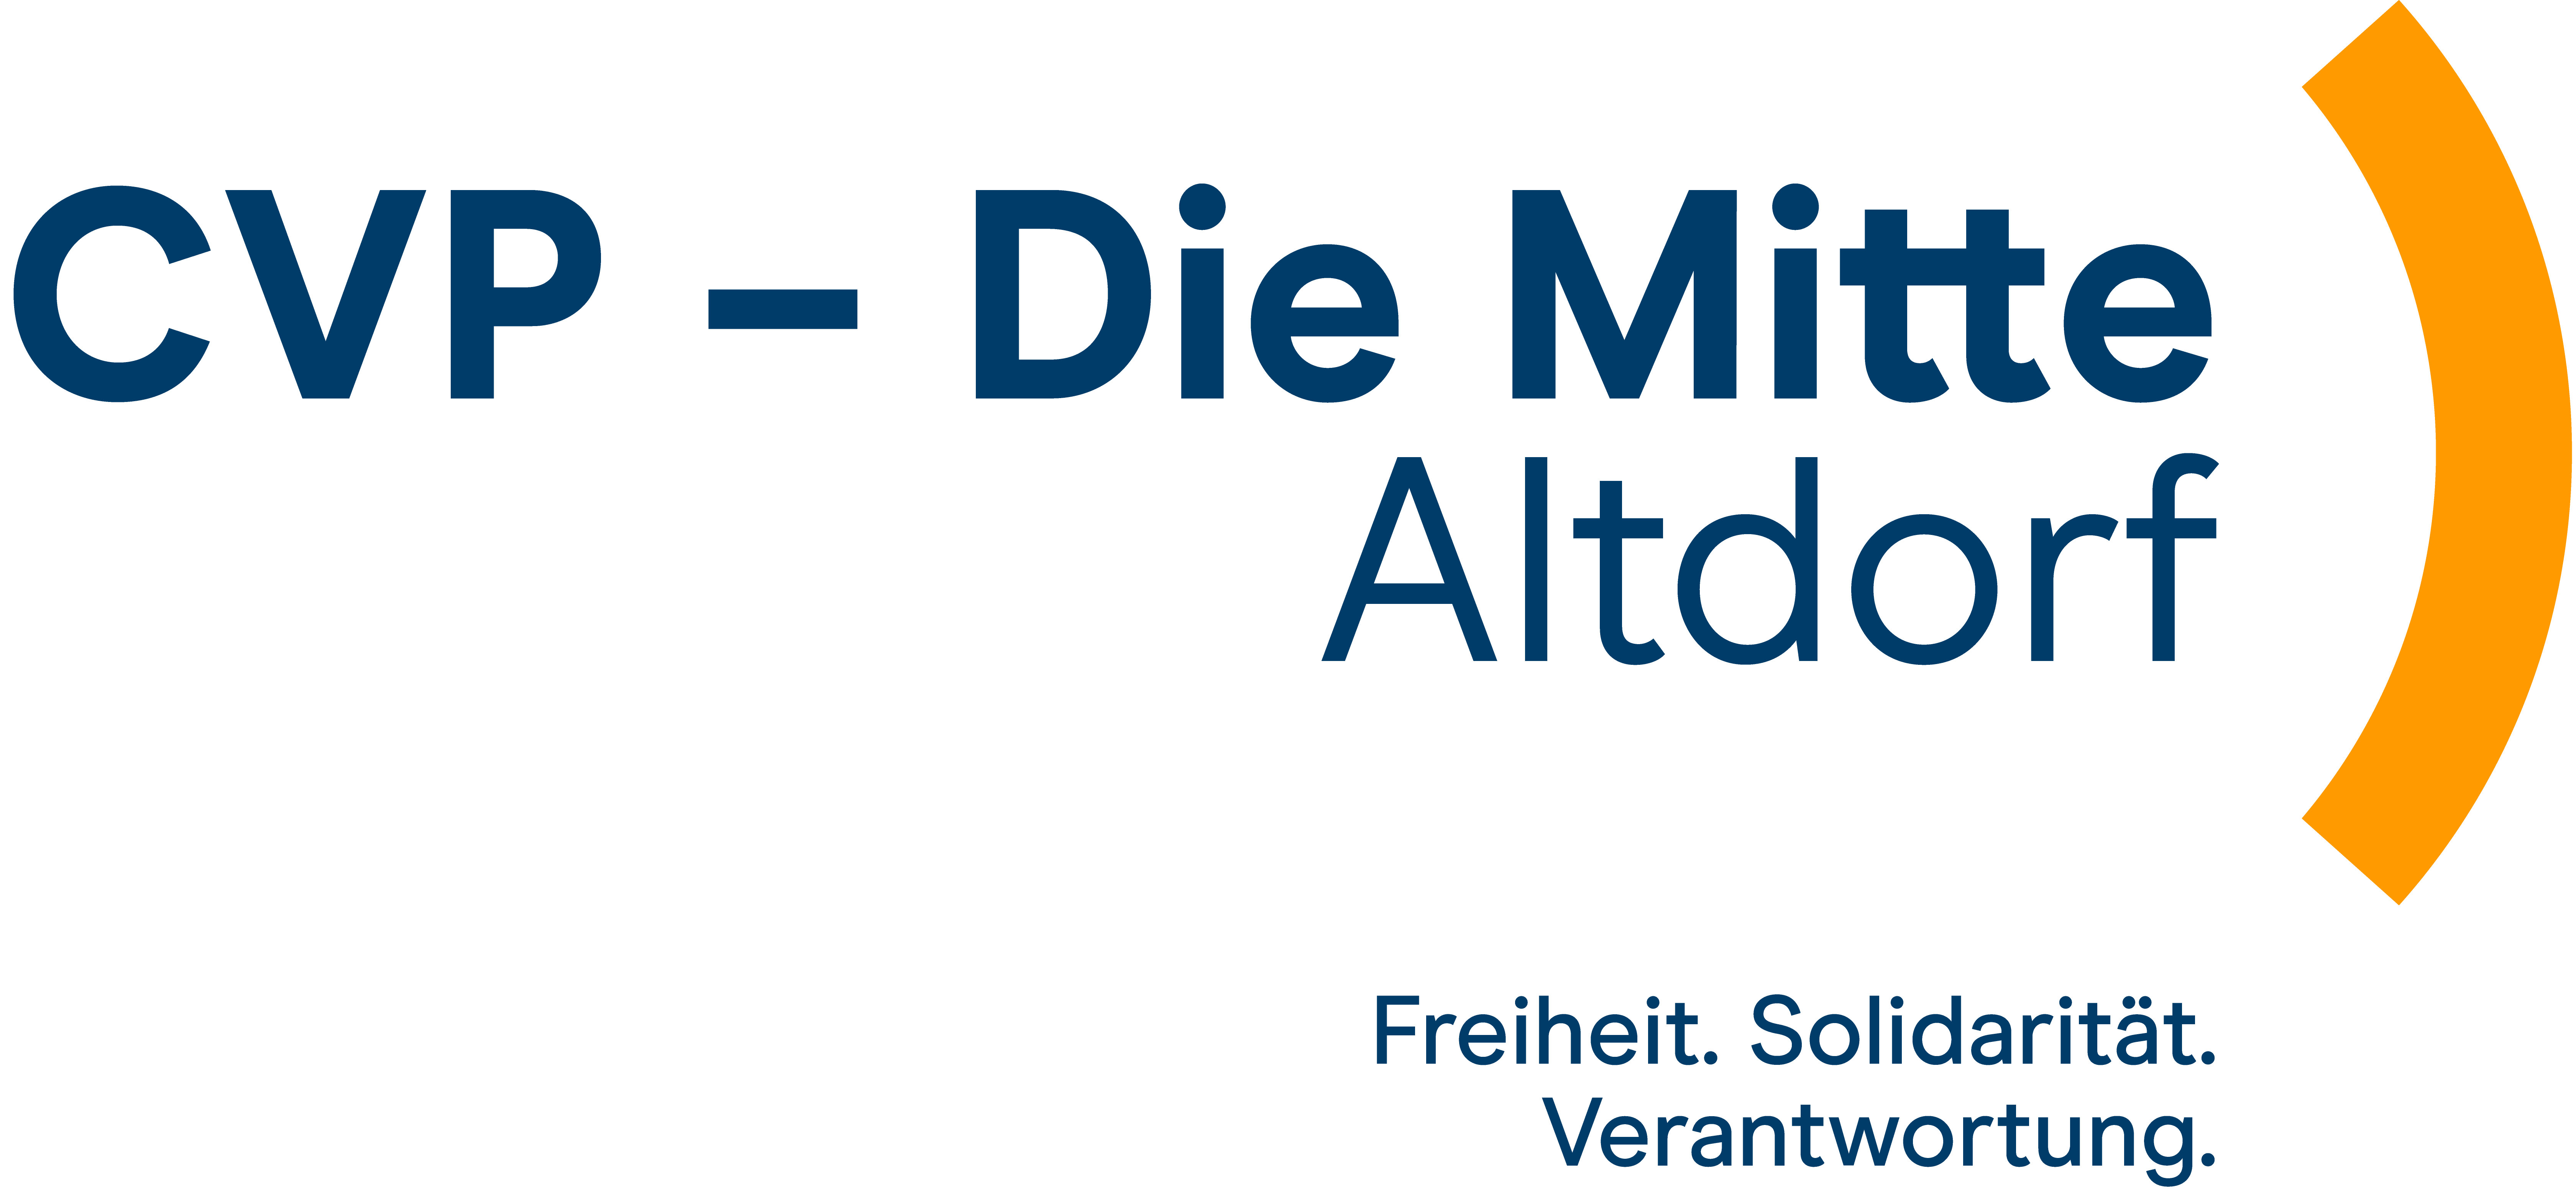 CVP - Die Mitte Altdorf